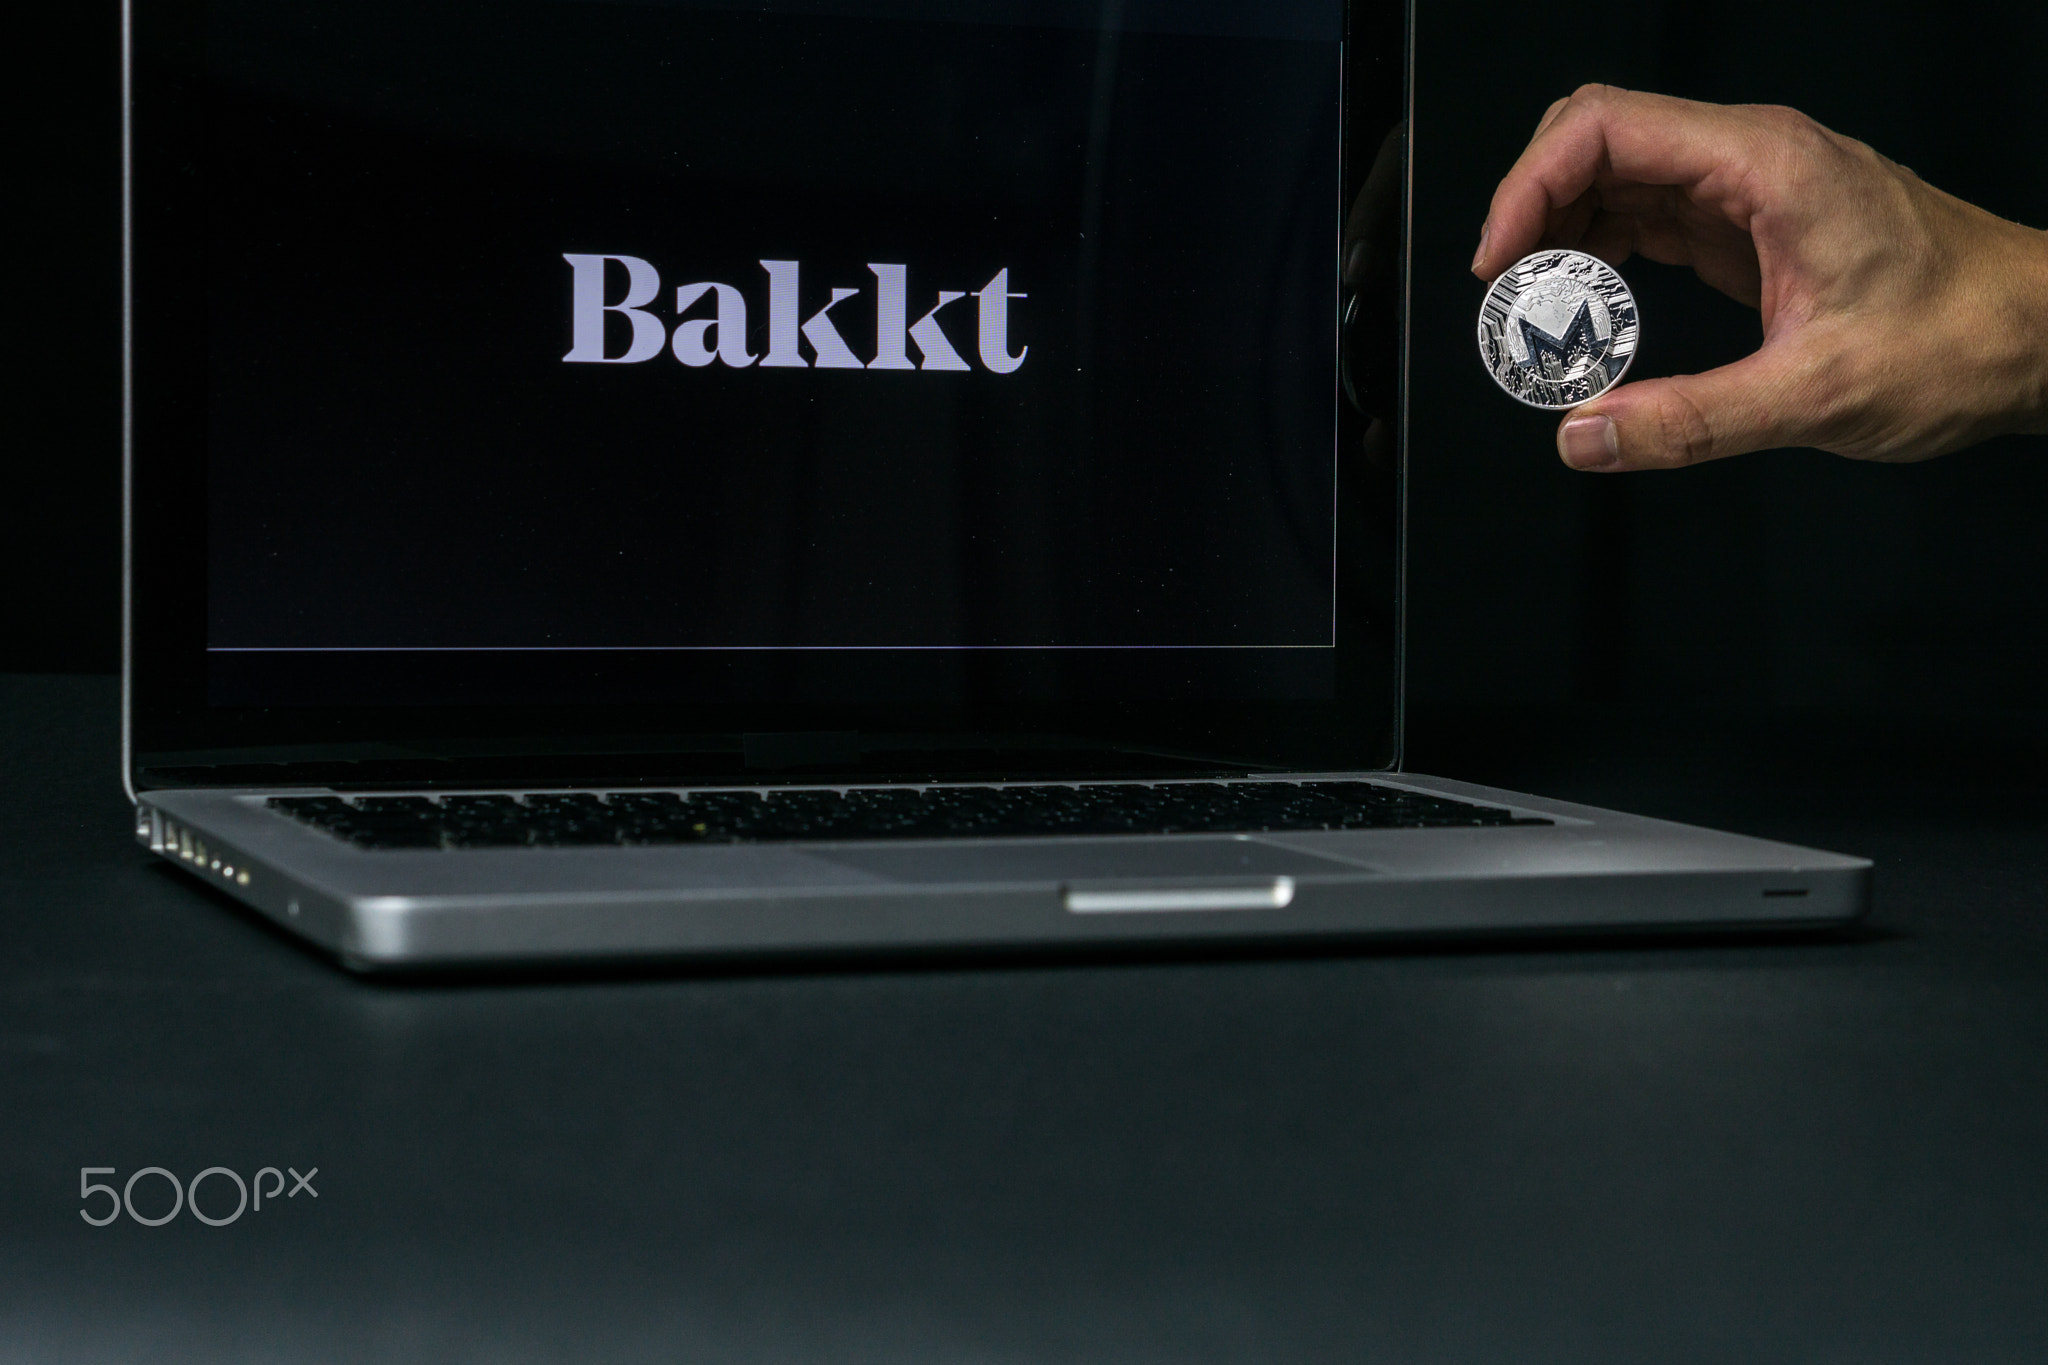 Monero coin with the Bakkt logo on a laptop screen, Slovenia - December 23th, 2018